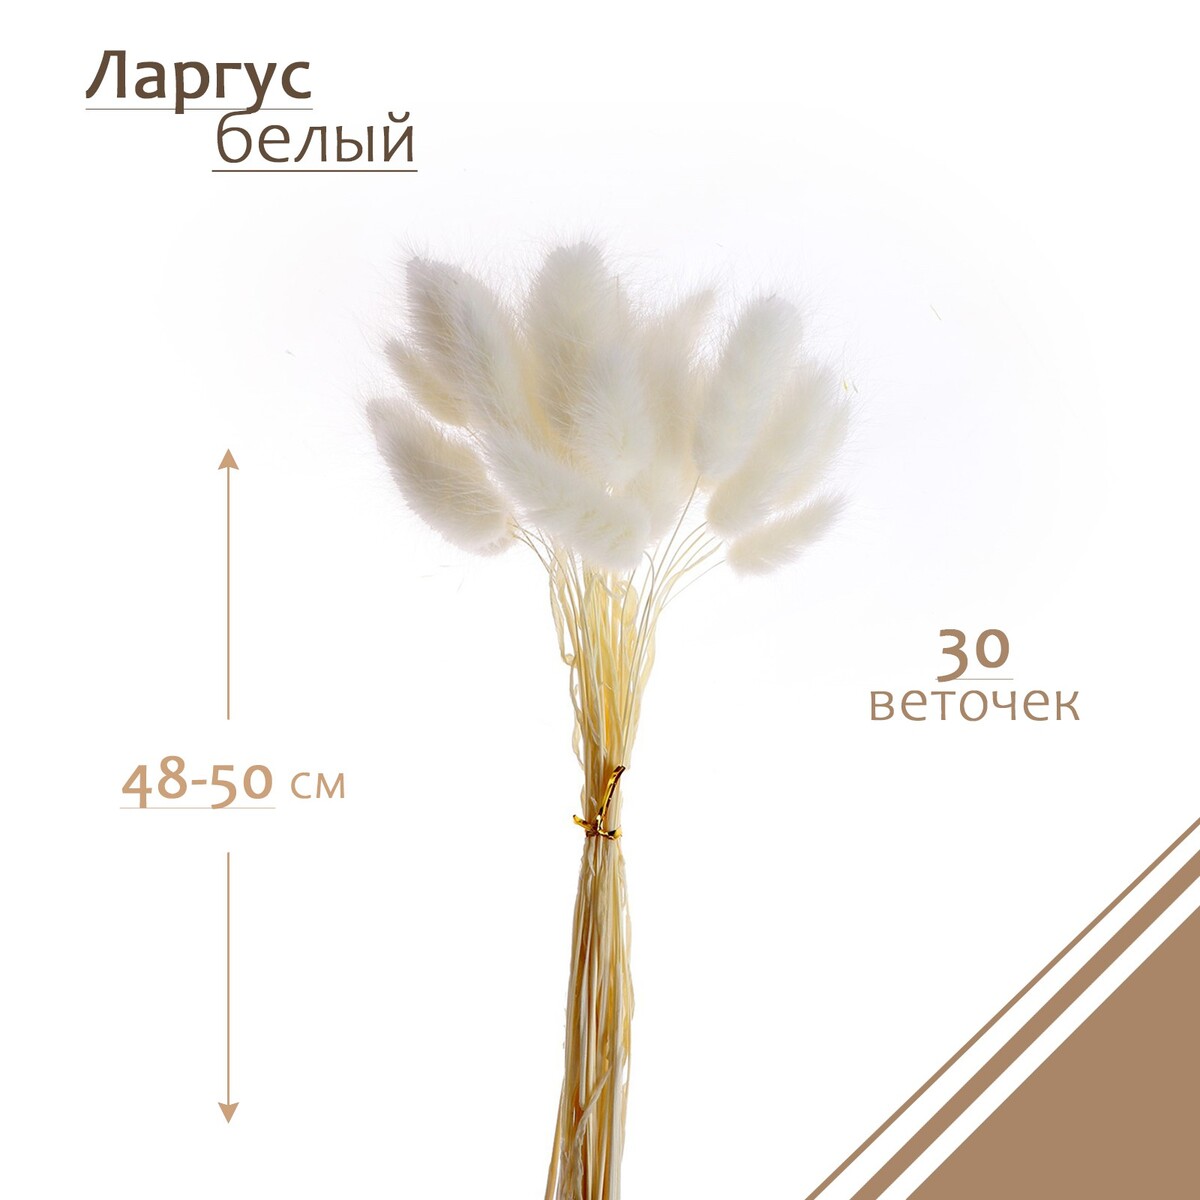 Сухие цветы лагуруса, набор 30 шт., цвет белый